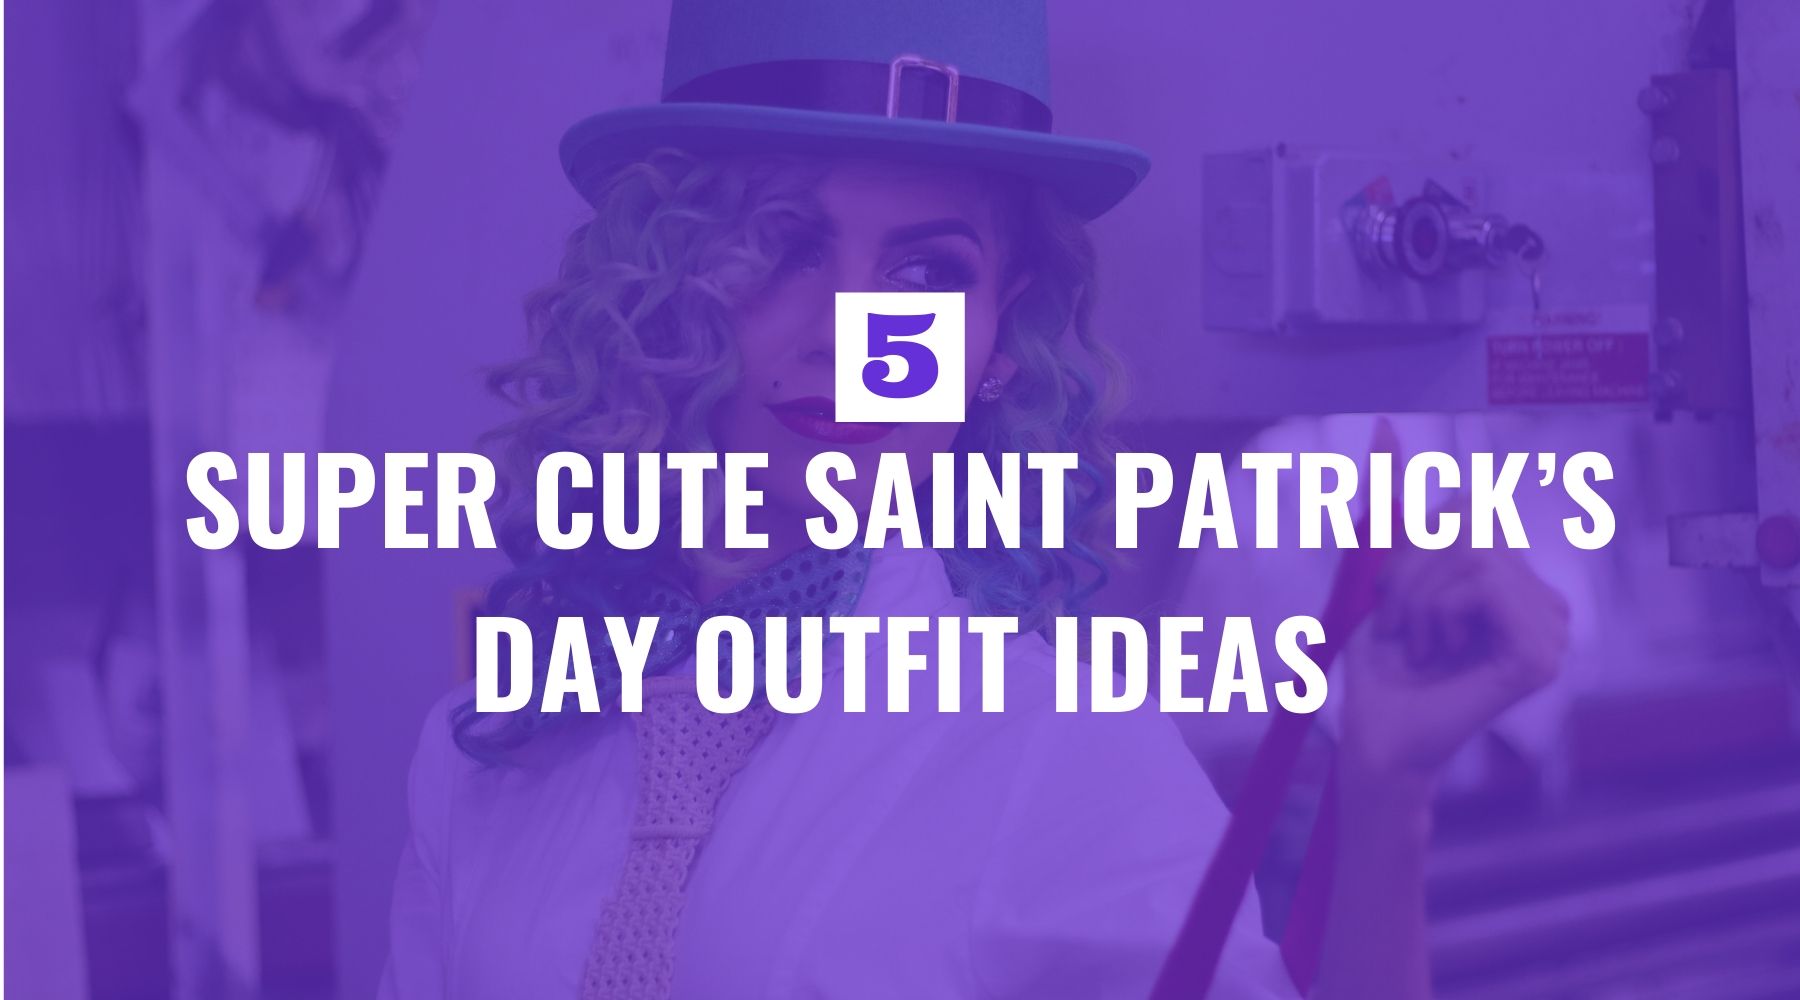 Five Super Cute Saint Patrick’s Day Outfit Ideas